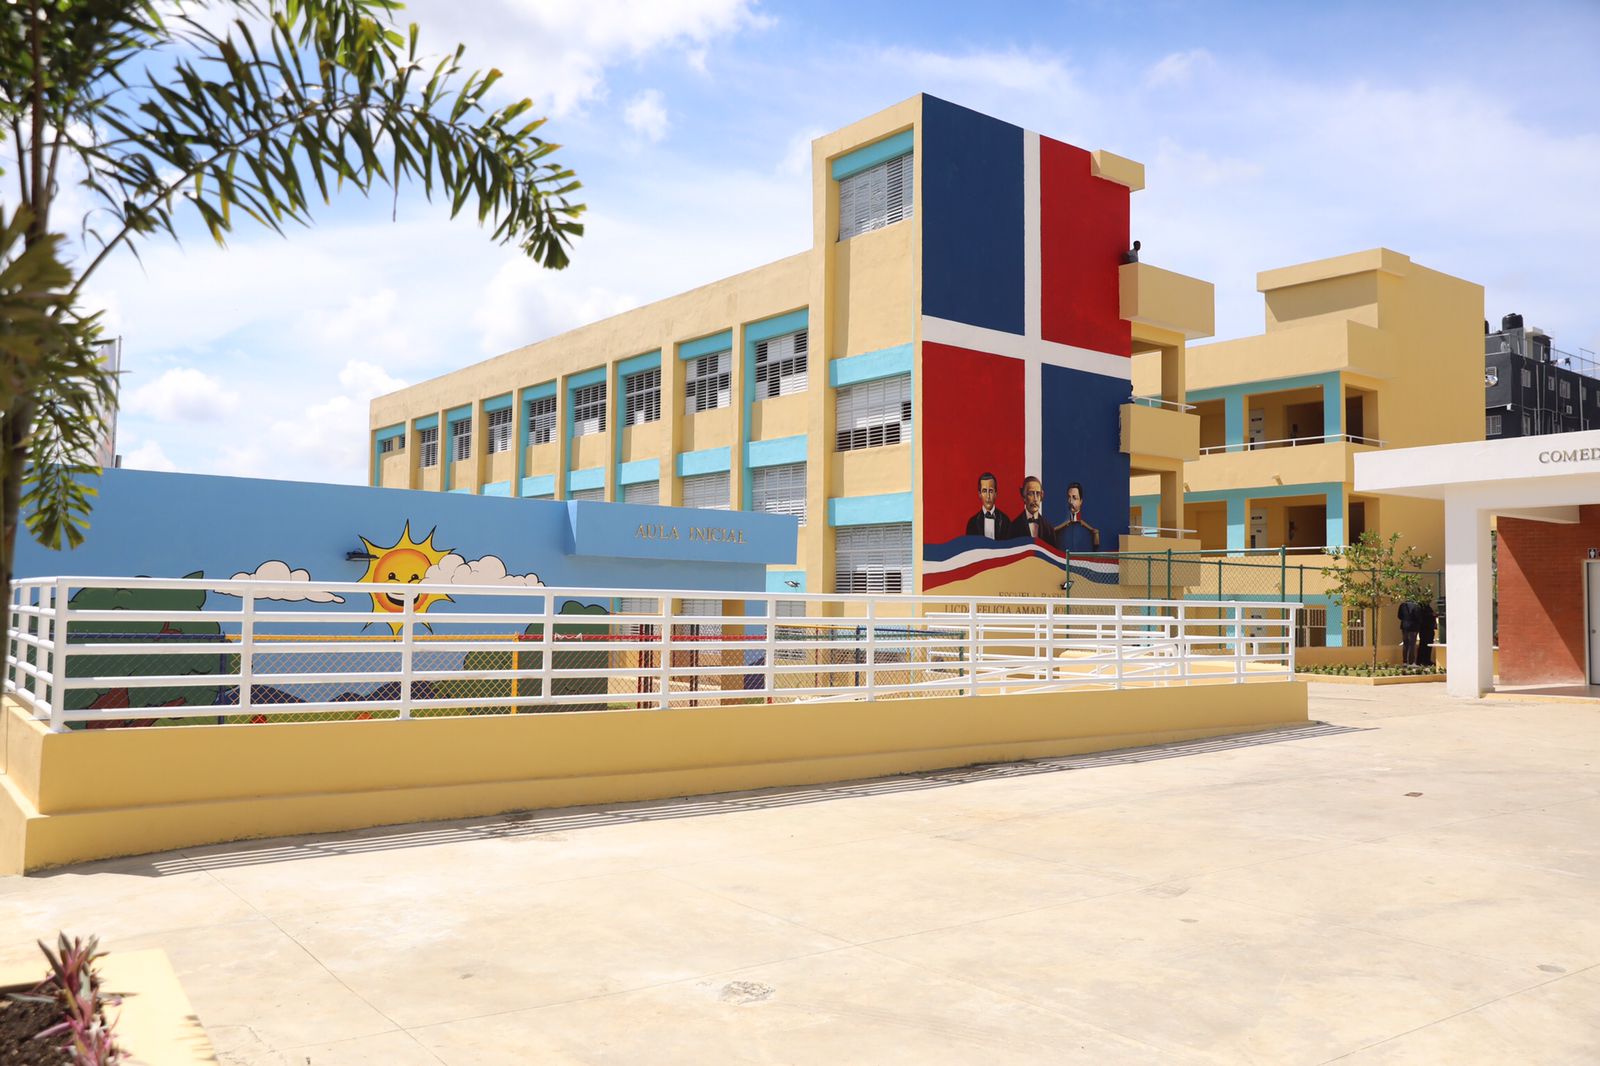 REPÚBLICA DOMINICANA: Presidente Abinader inaugura escuela en Los Guaricanos que beneficiará a 800 estudiantes del nivel básico